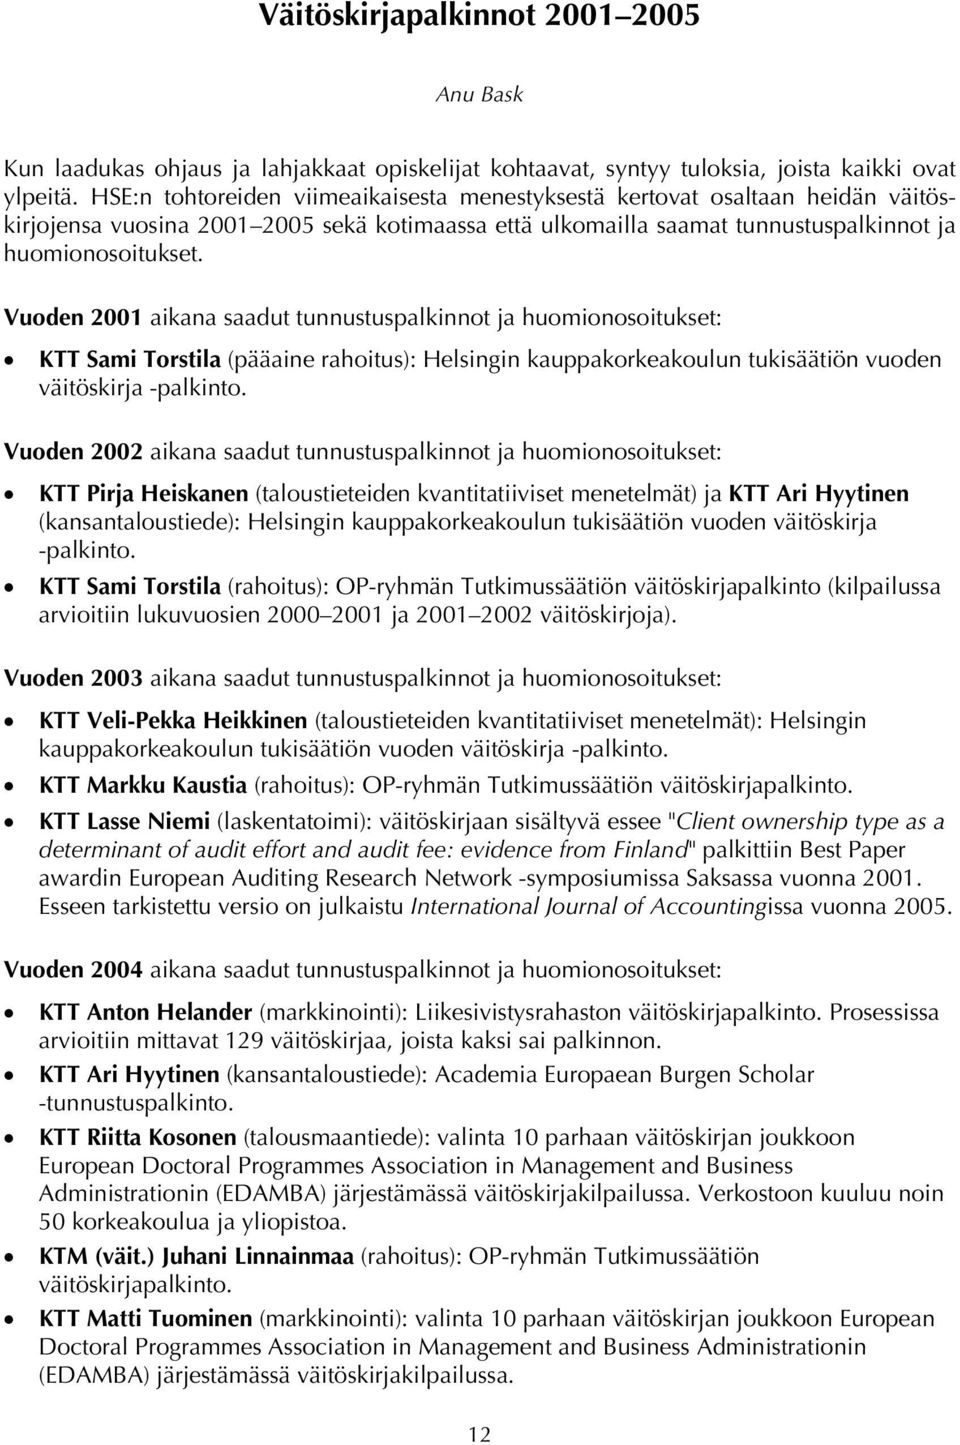 Vuoden 2001 aikana saadut tunnustuspalkinnot ja huomionosoitukset: KTT Sami Torstila (pääaine rahoitus): Helsingin kauppakorkeakoulun tukisäätiön vuoden väitöskirja -palkinto.